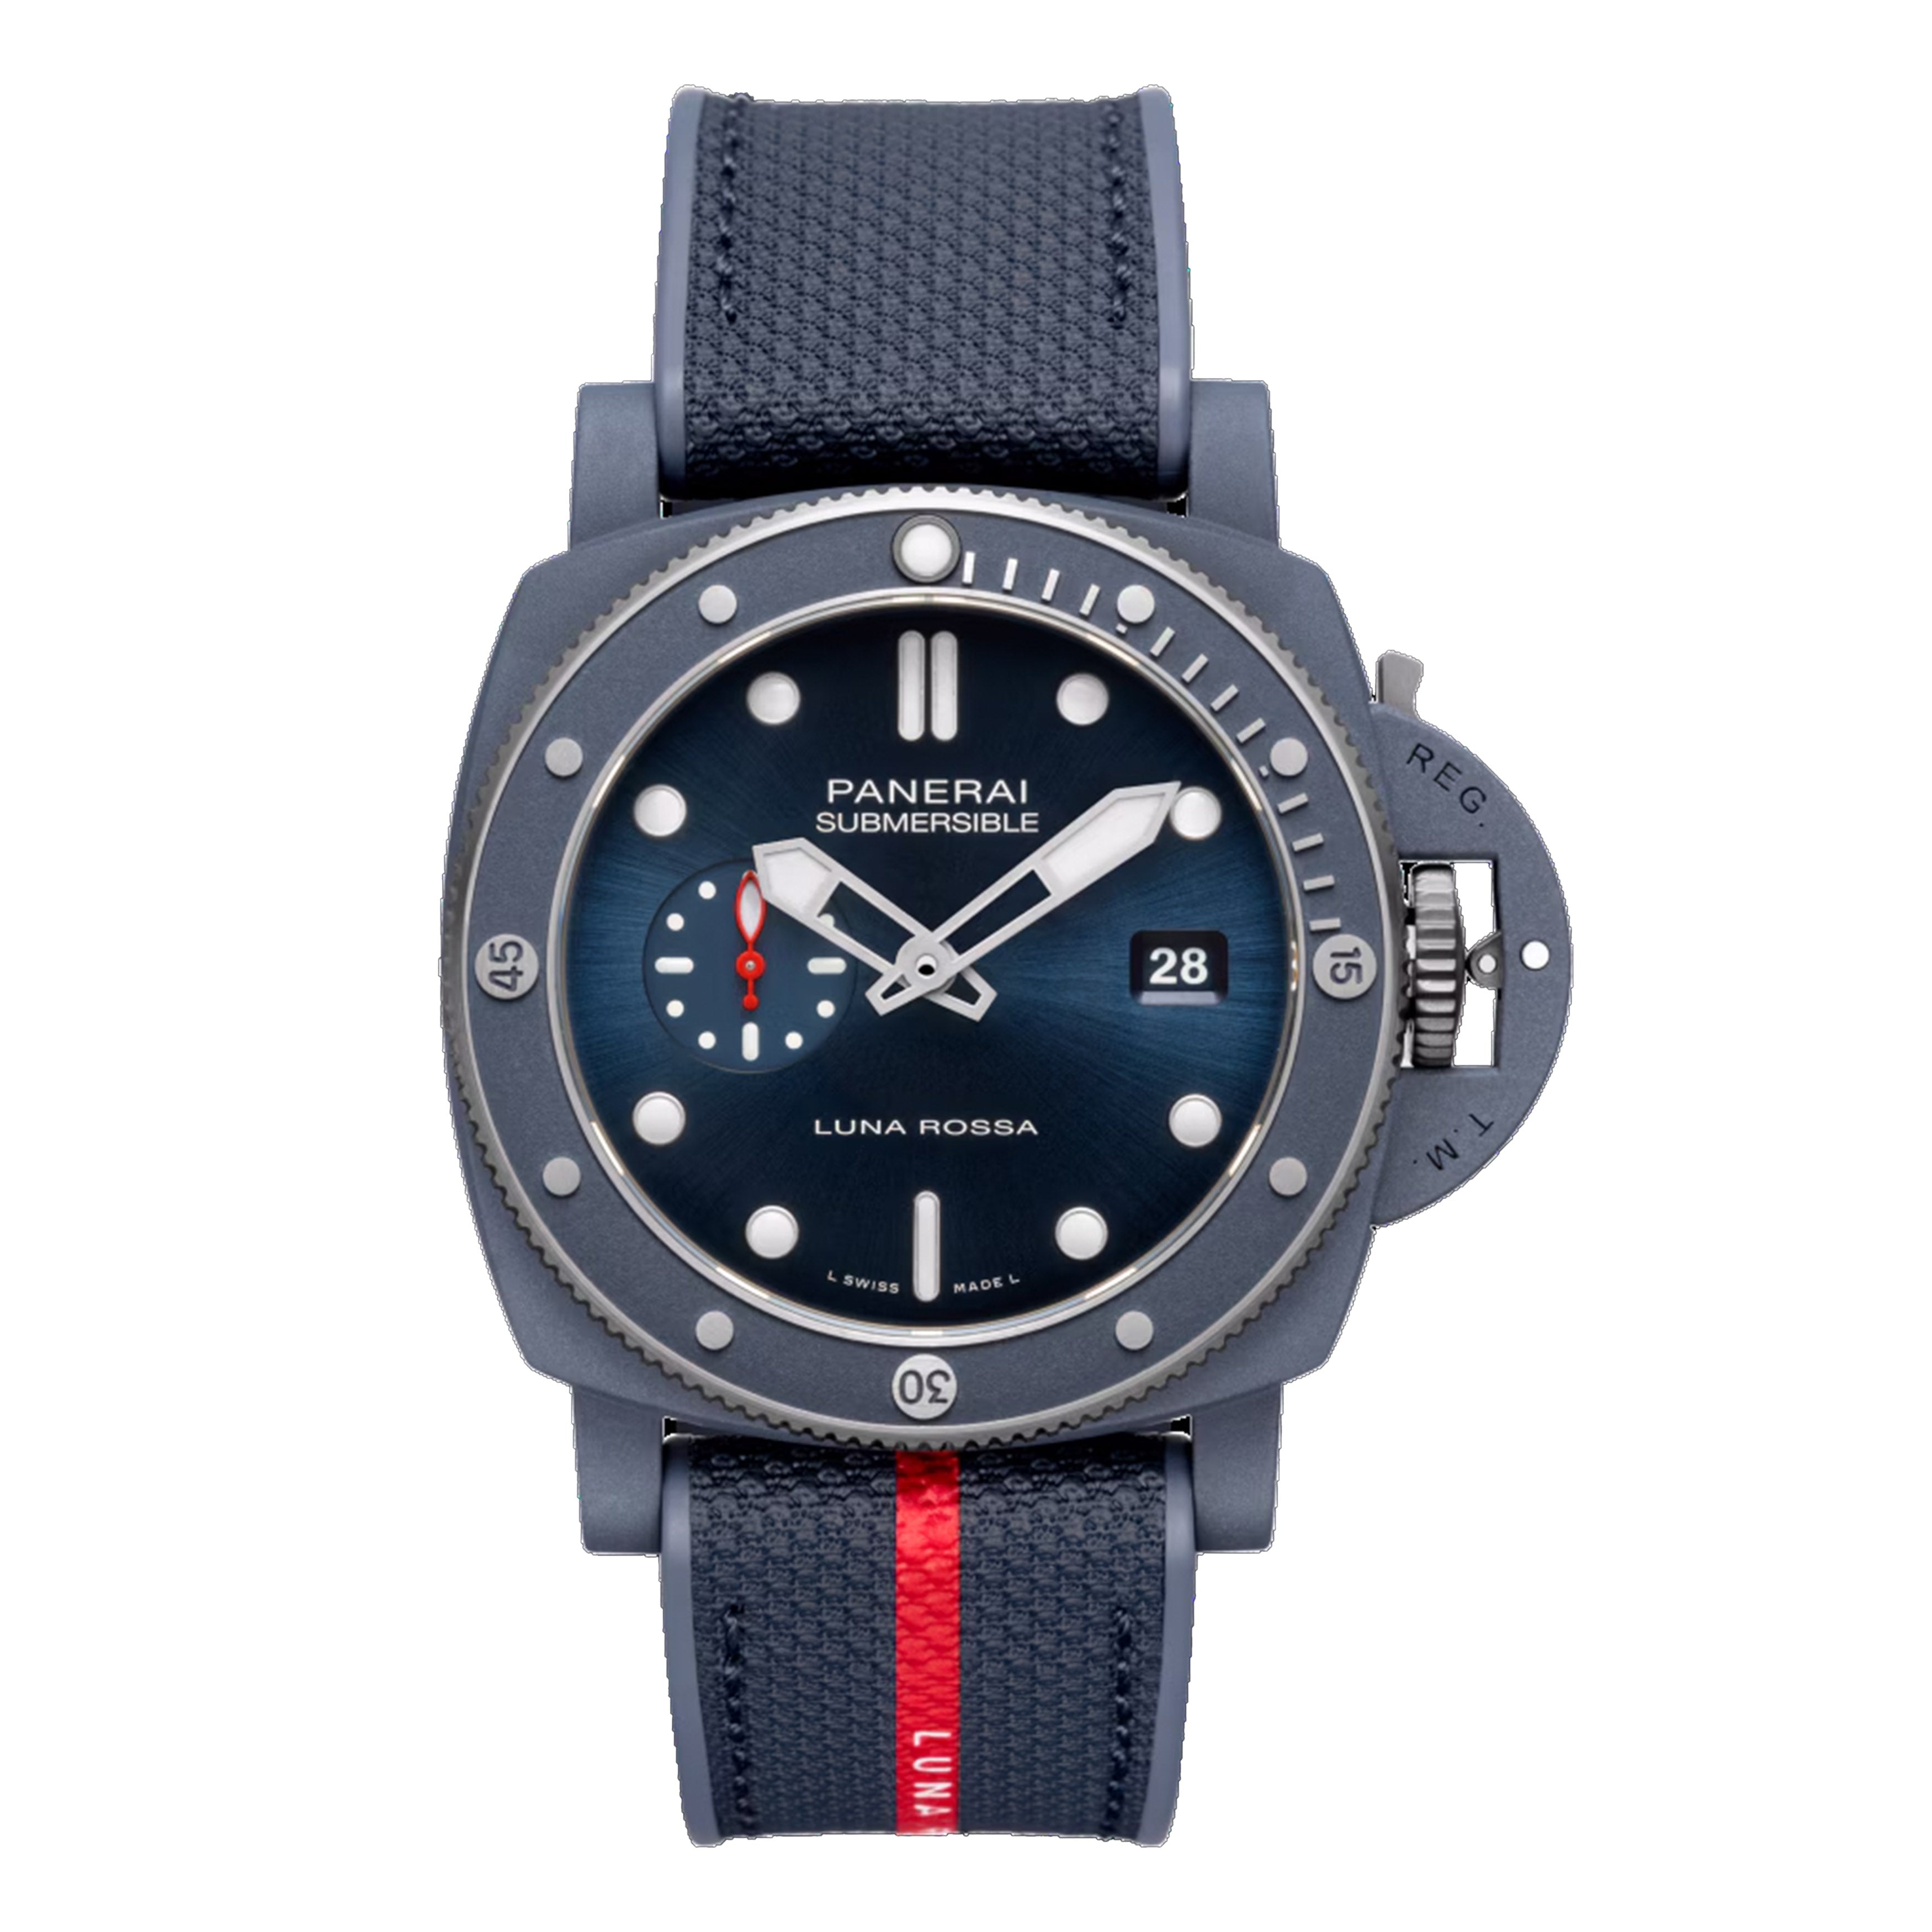 Panerai Submersible QuarantaQuattro Luna Rossa Ti-Ceramitech Watch, 44mm Blue Dial, PAM01466